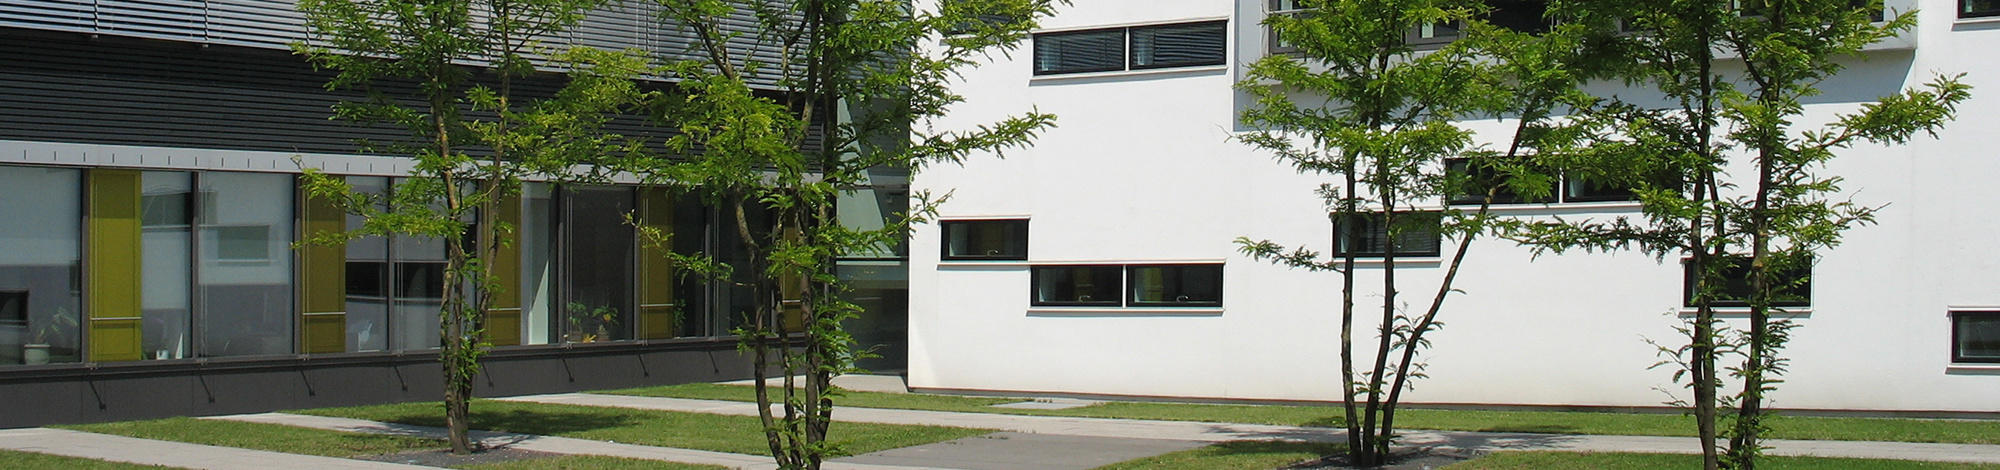 налоговое отделение, Гельдерн, Германия